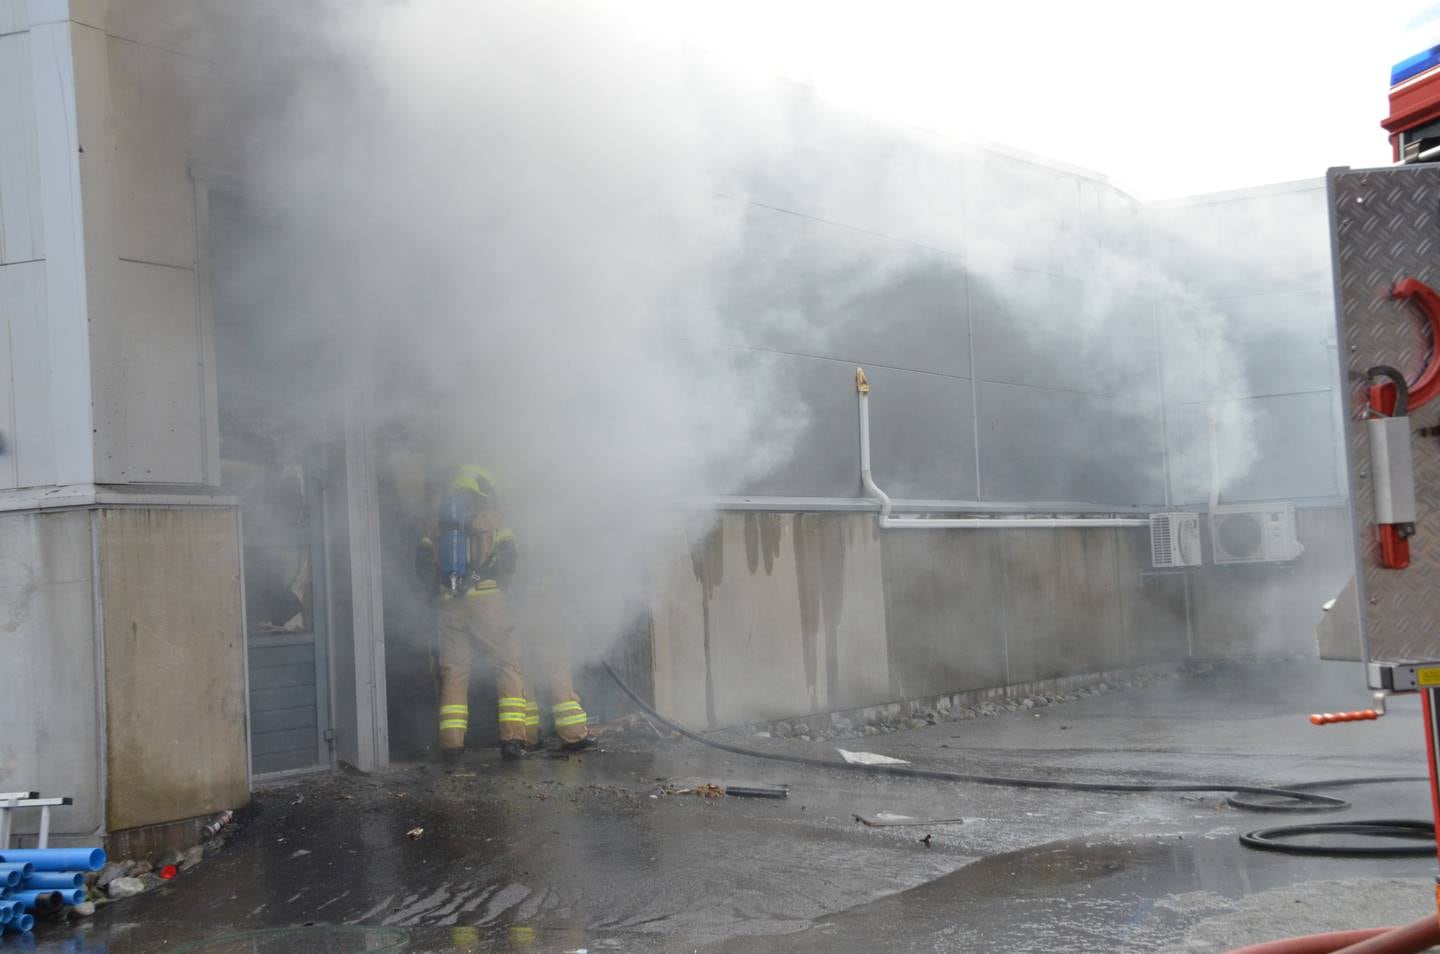 Ingen vet hvordan brannen oppsto, fordi det er lite brennbart materiale i verkstedet, opplyser politiet.